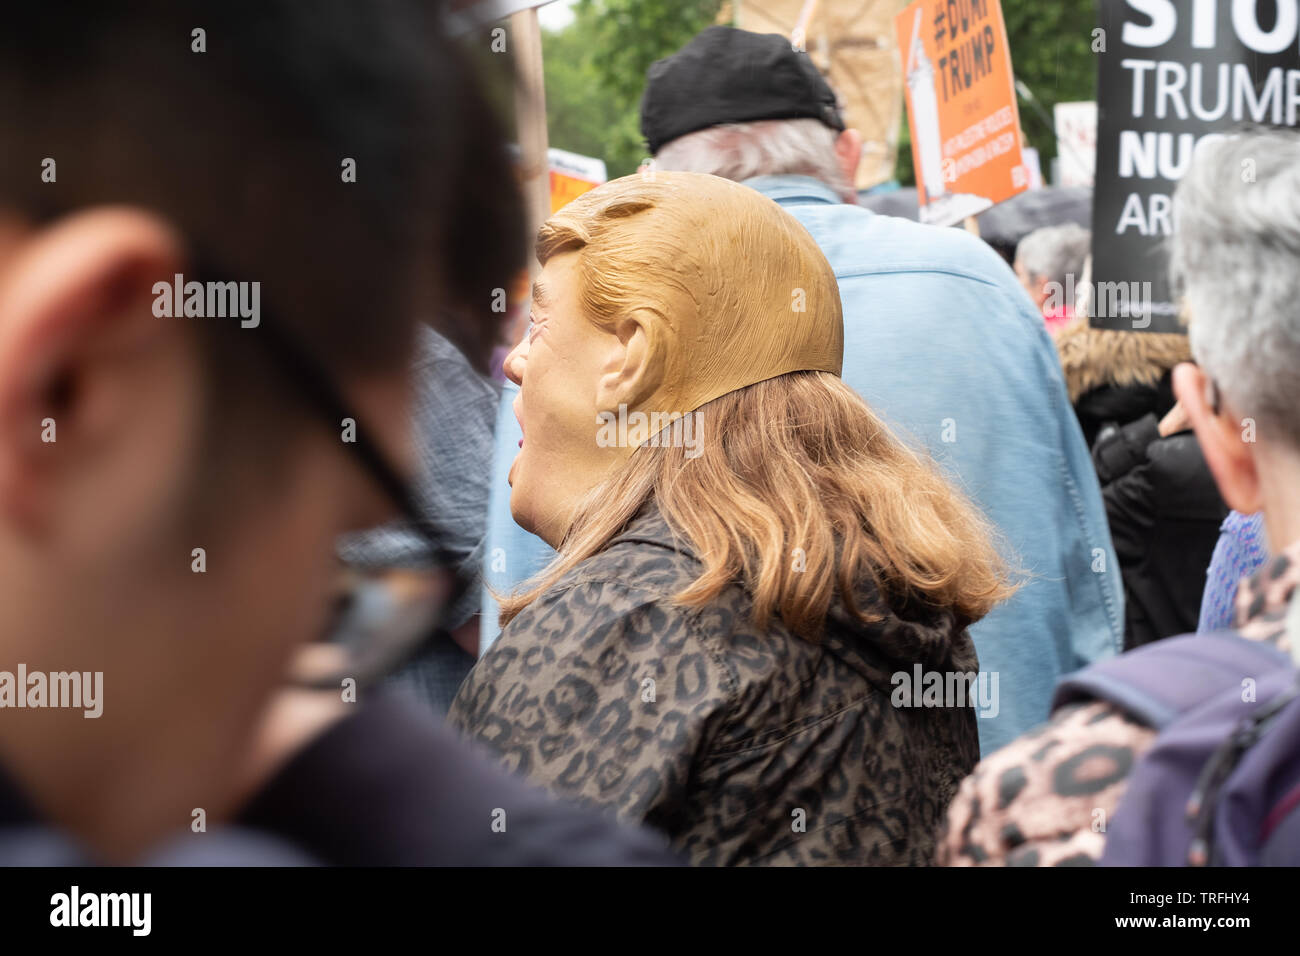 04 giugno 2019 Londra Uk Trump protesta nel centro di Londra Foto Stock